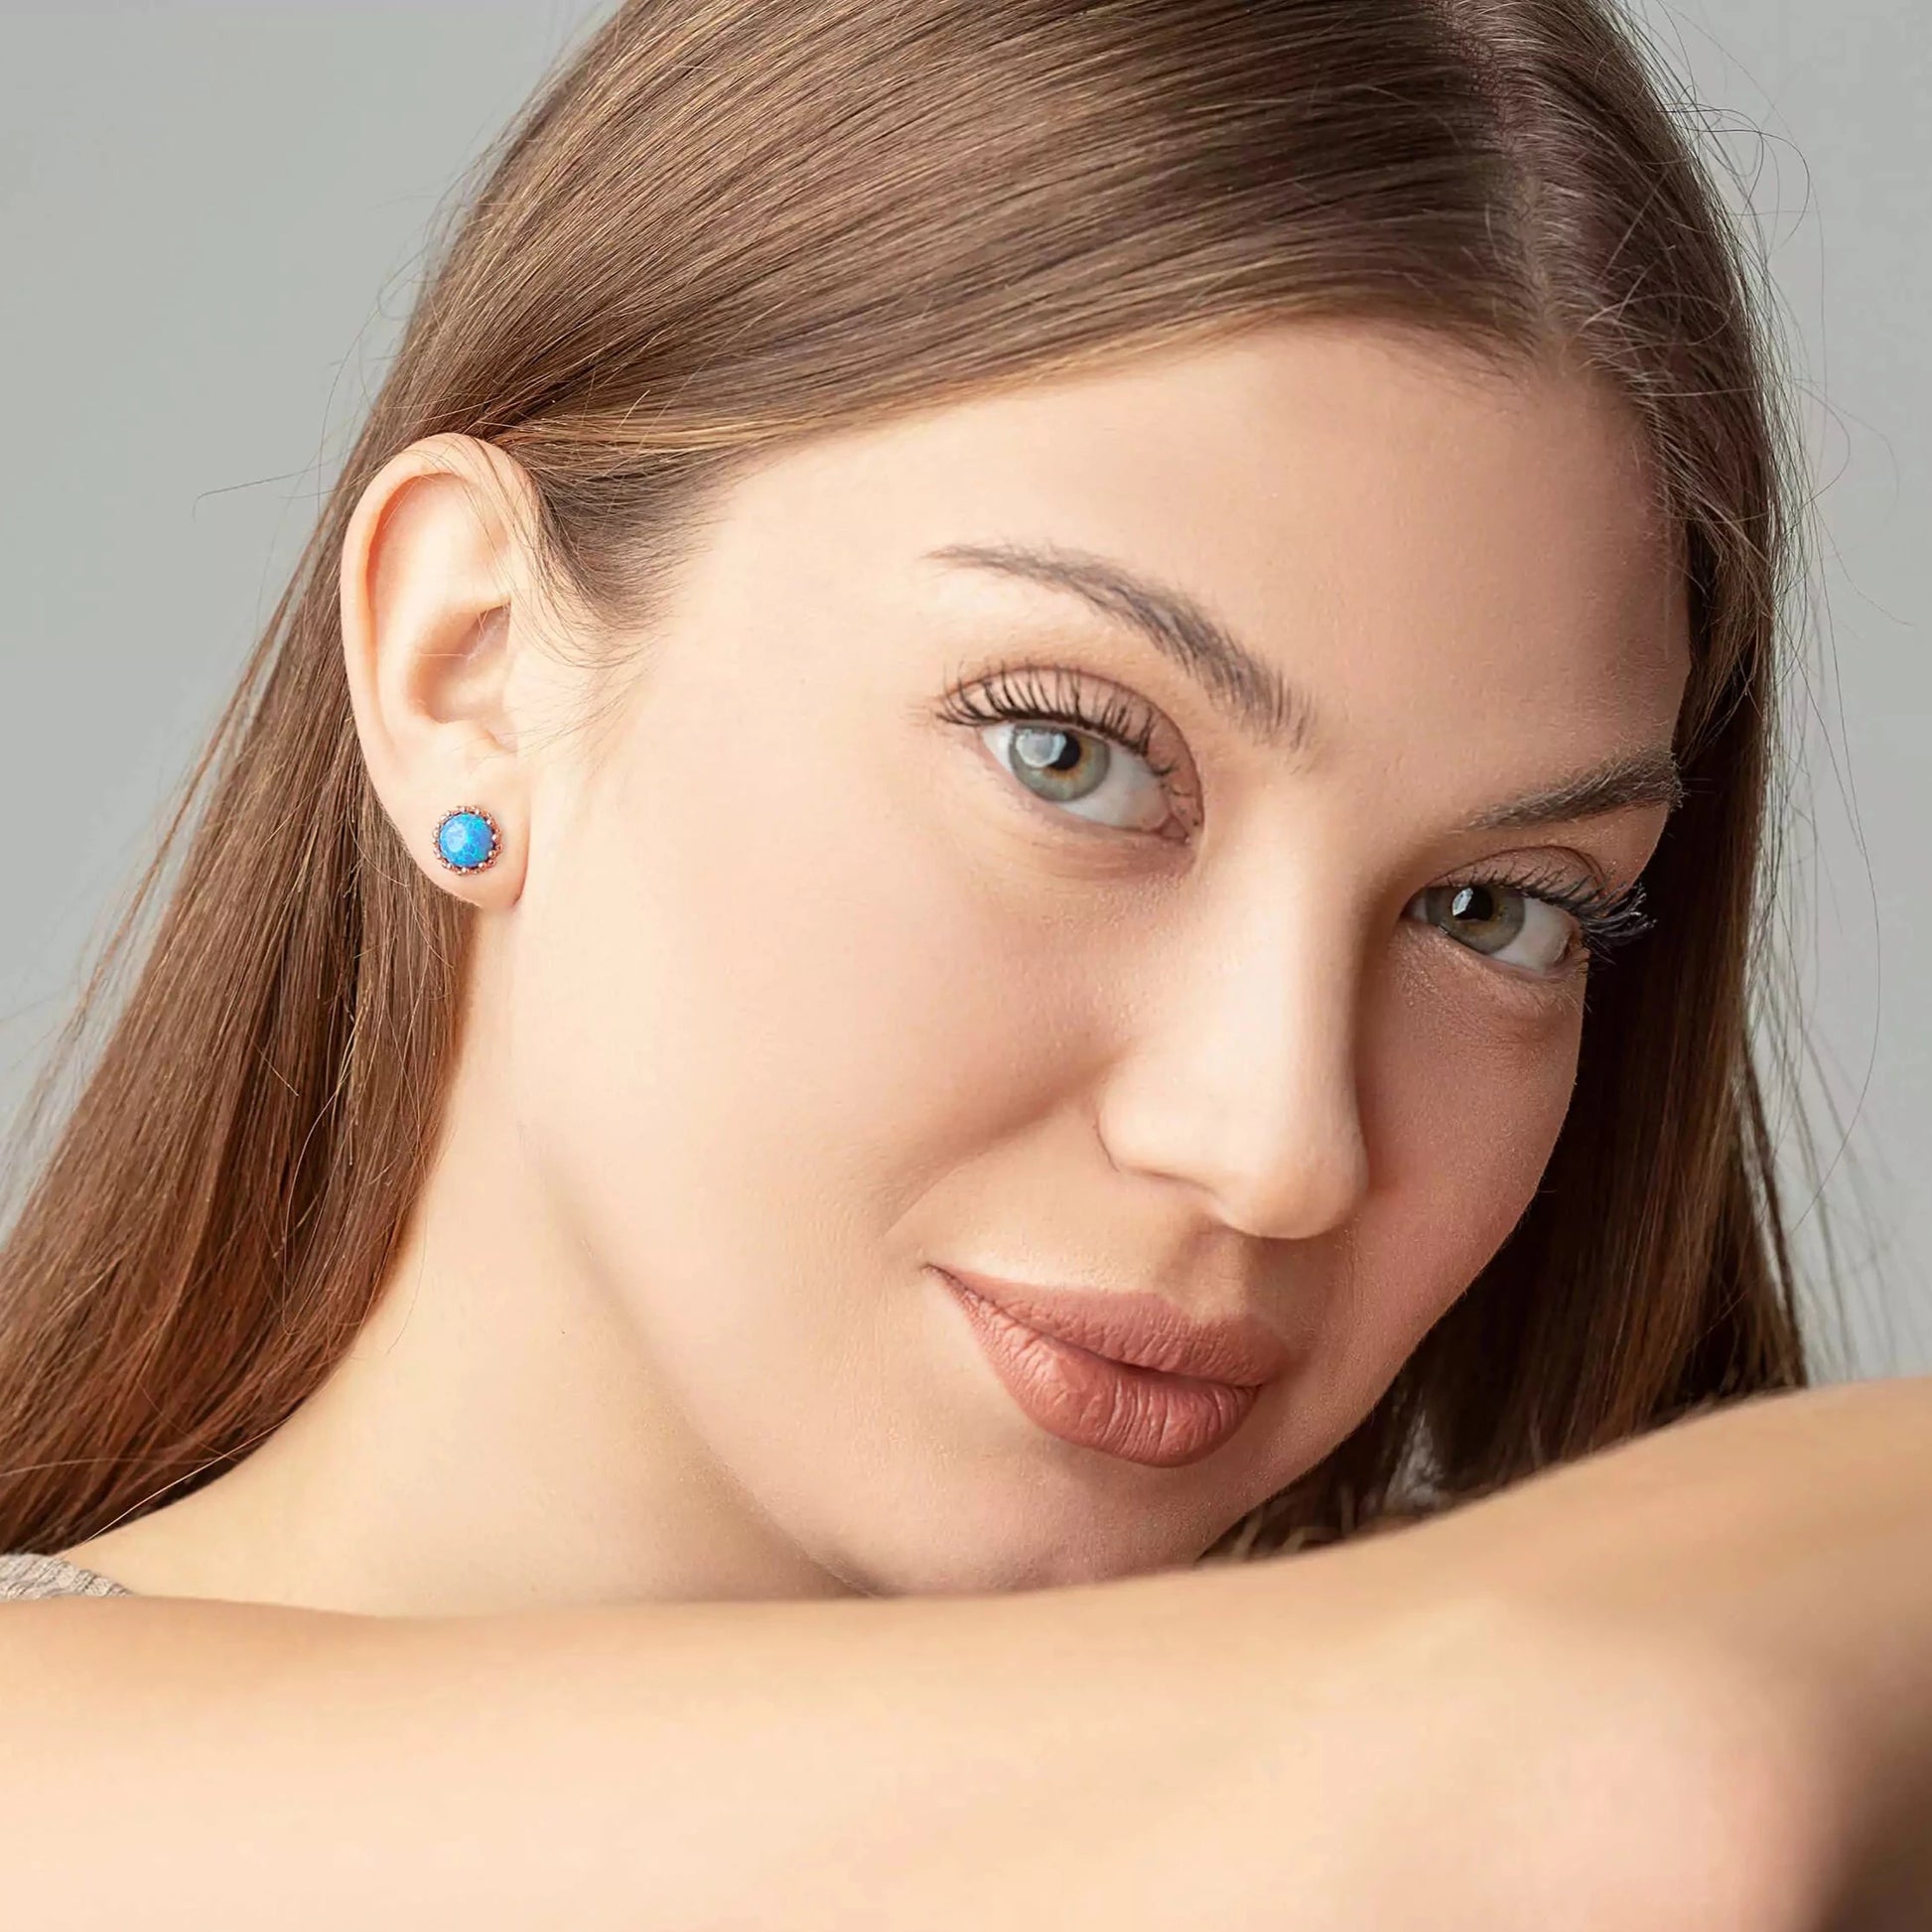 Blue opal crown studs on a woman ears